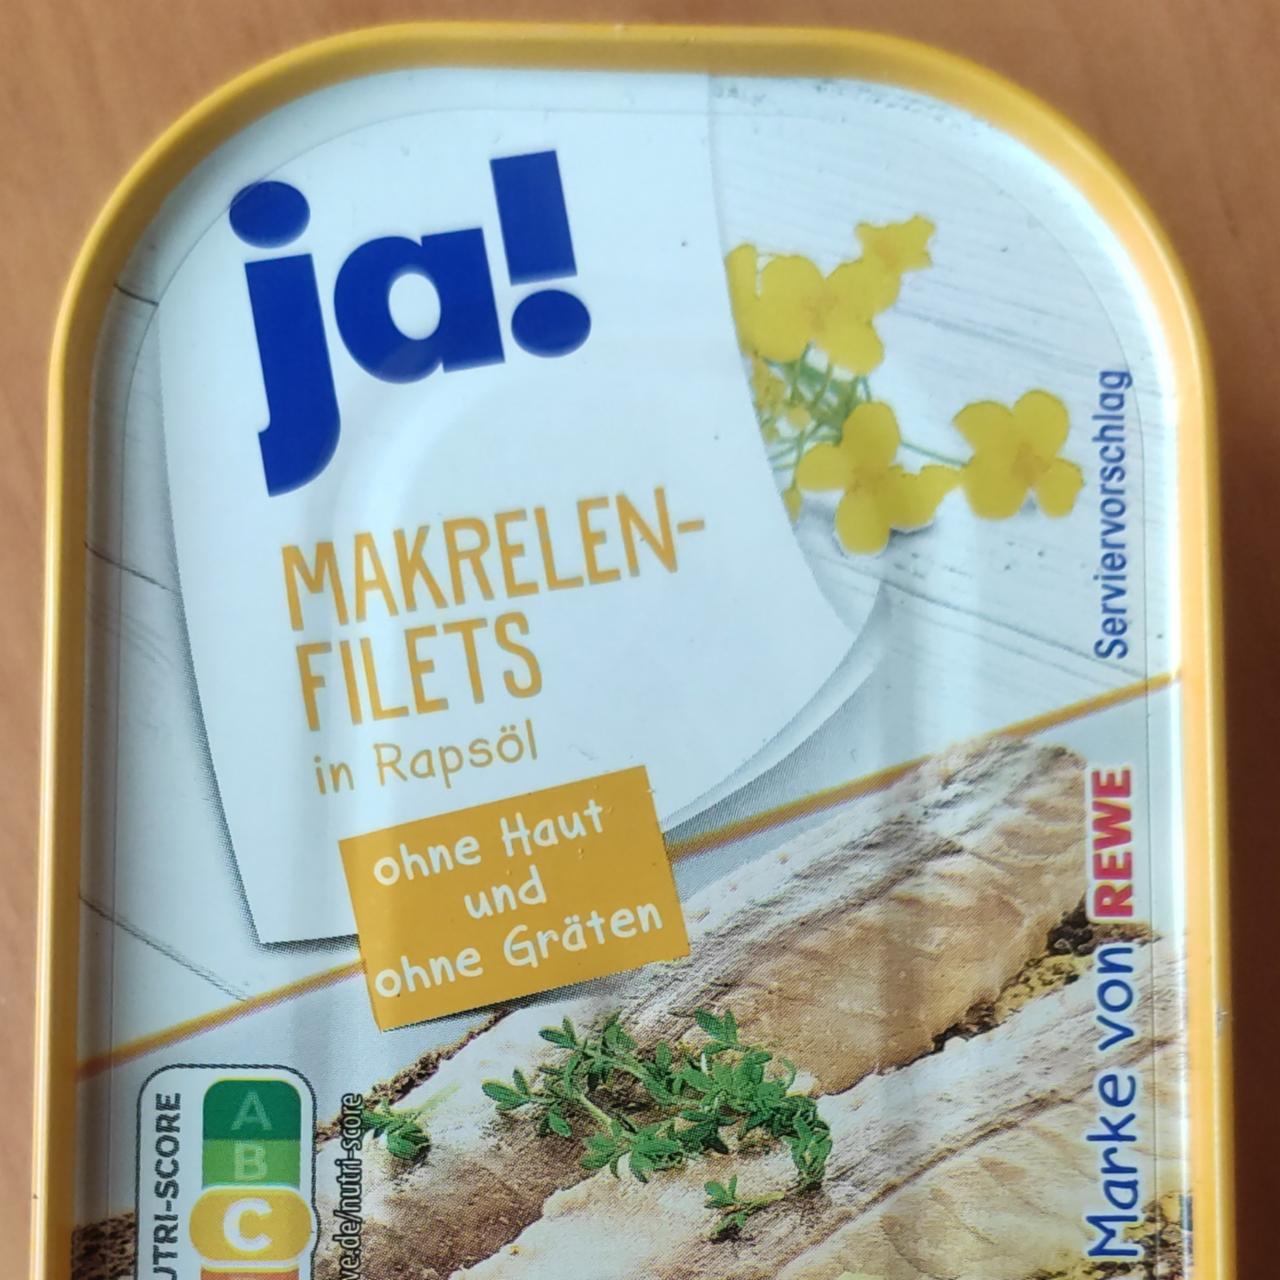 Fotografie - Makrelen-Filets in Rapsöl Ja!